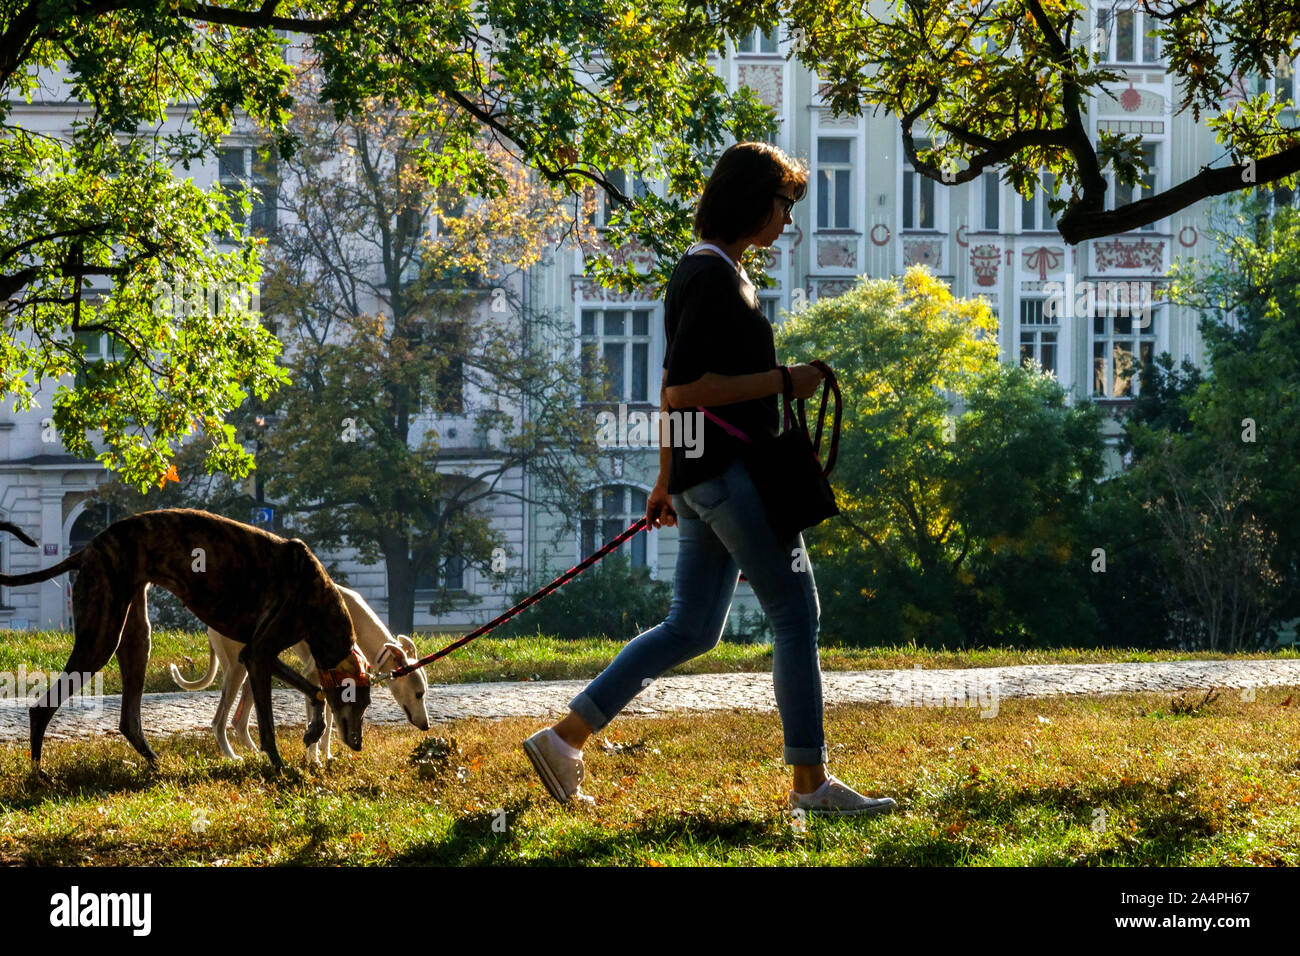 Frau mit zwei greyhound-Hunden, die im Prager Stadtpark Riegrovy sady im Herbst Vinohrady Prager Park Tschechien im Alltag spazieren Stockfoto